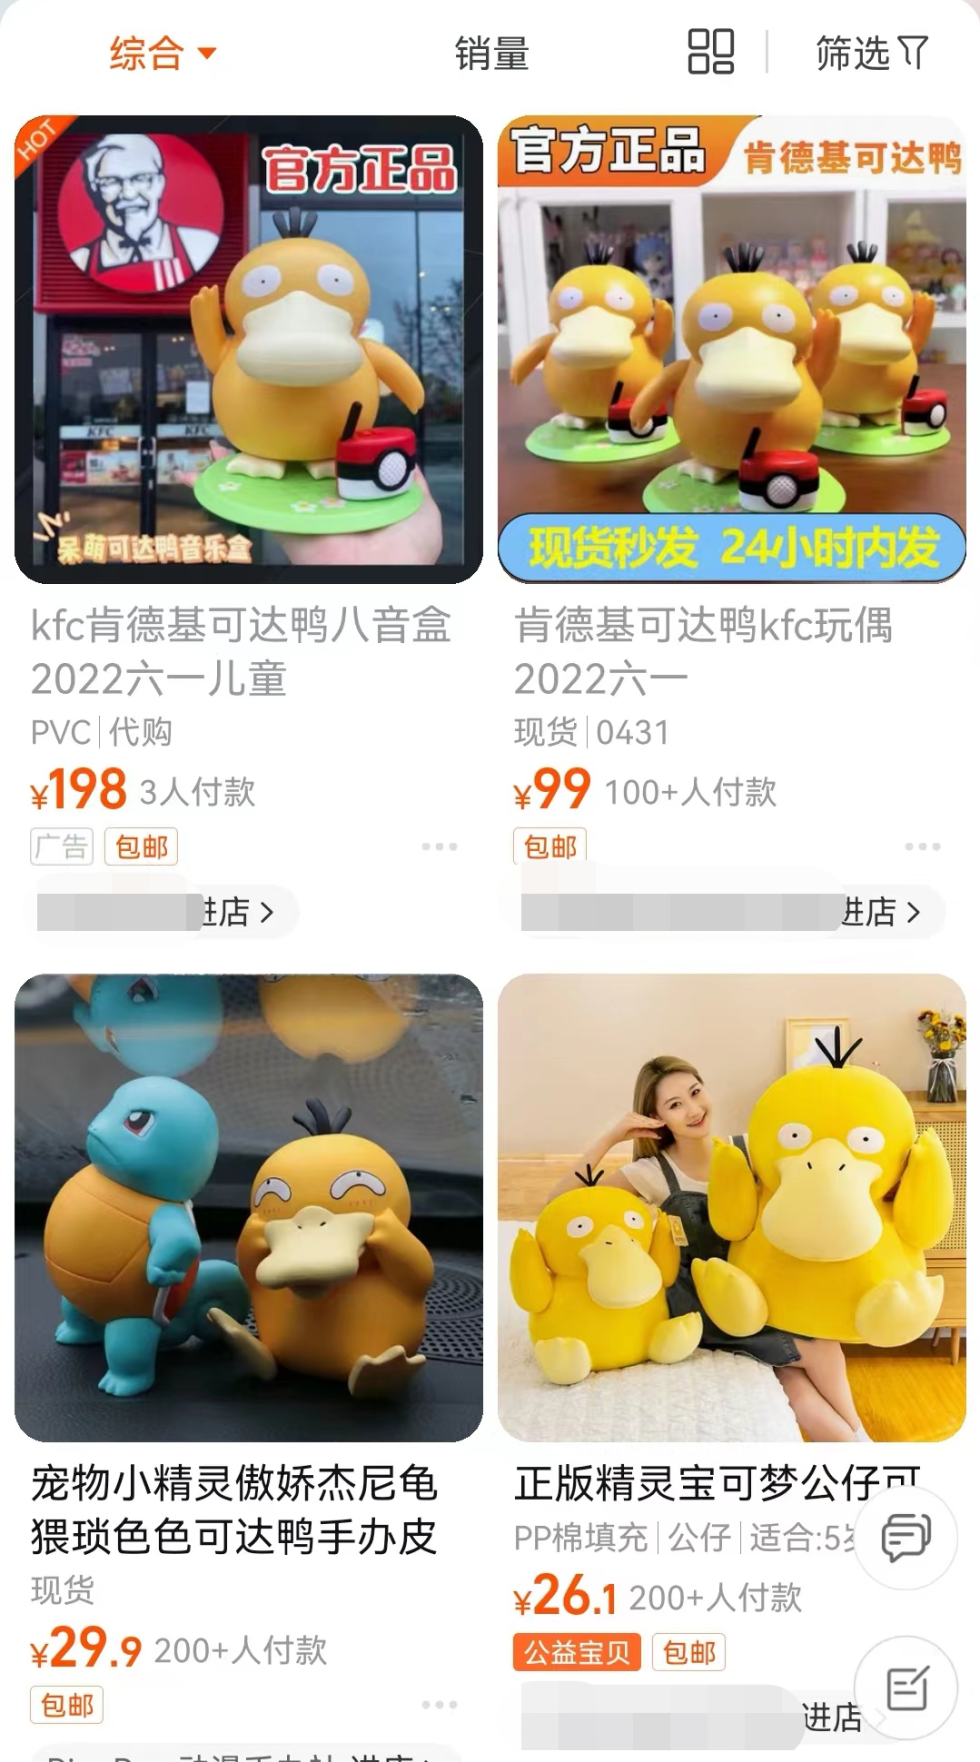 一鸭难求！eBay卖799元人民币，义乌工厂连夜赶制可达鸭